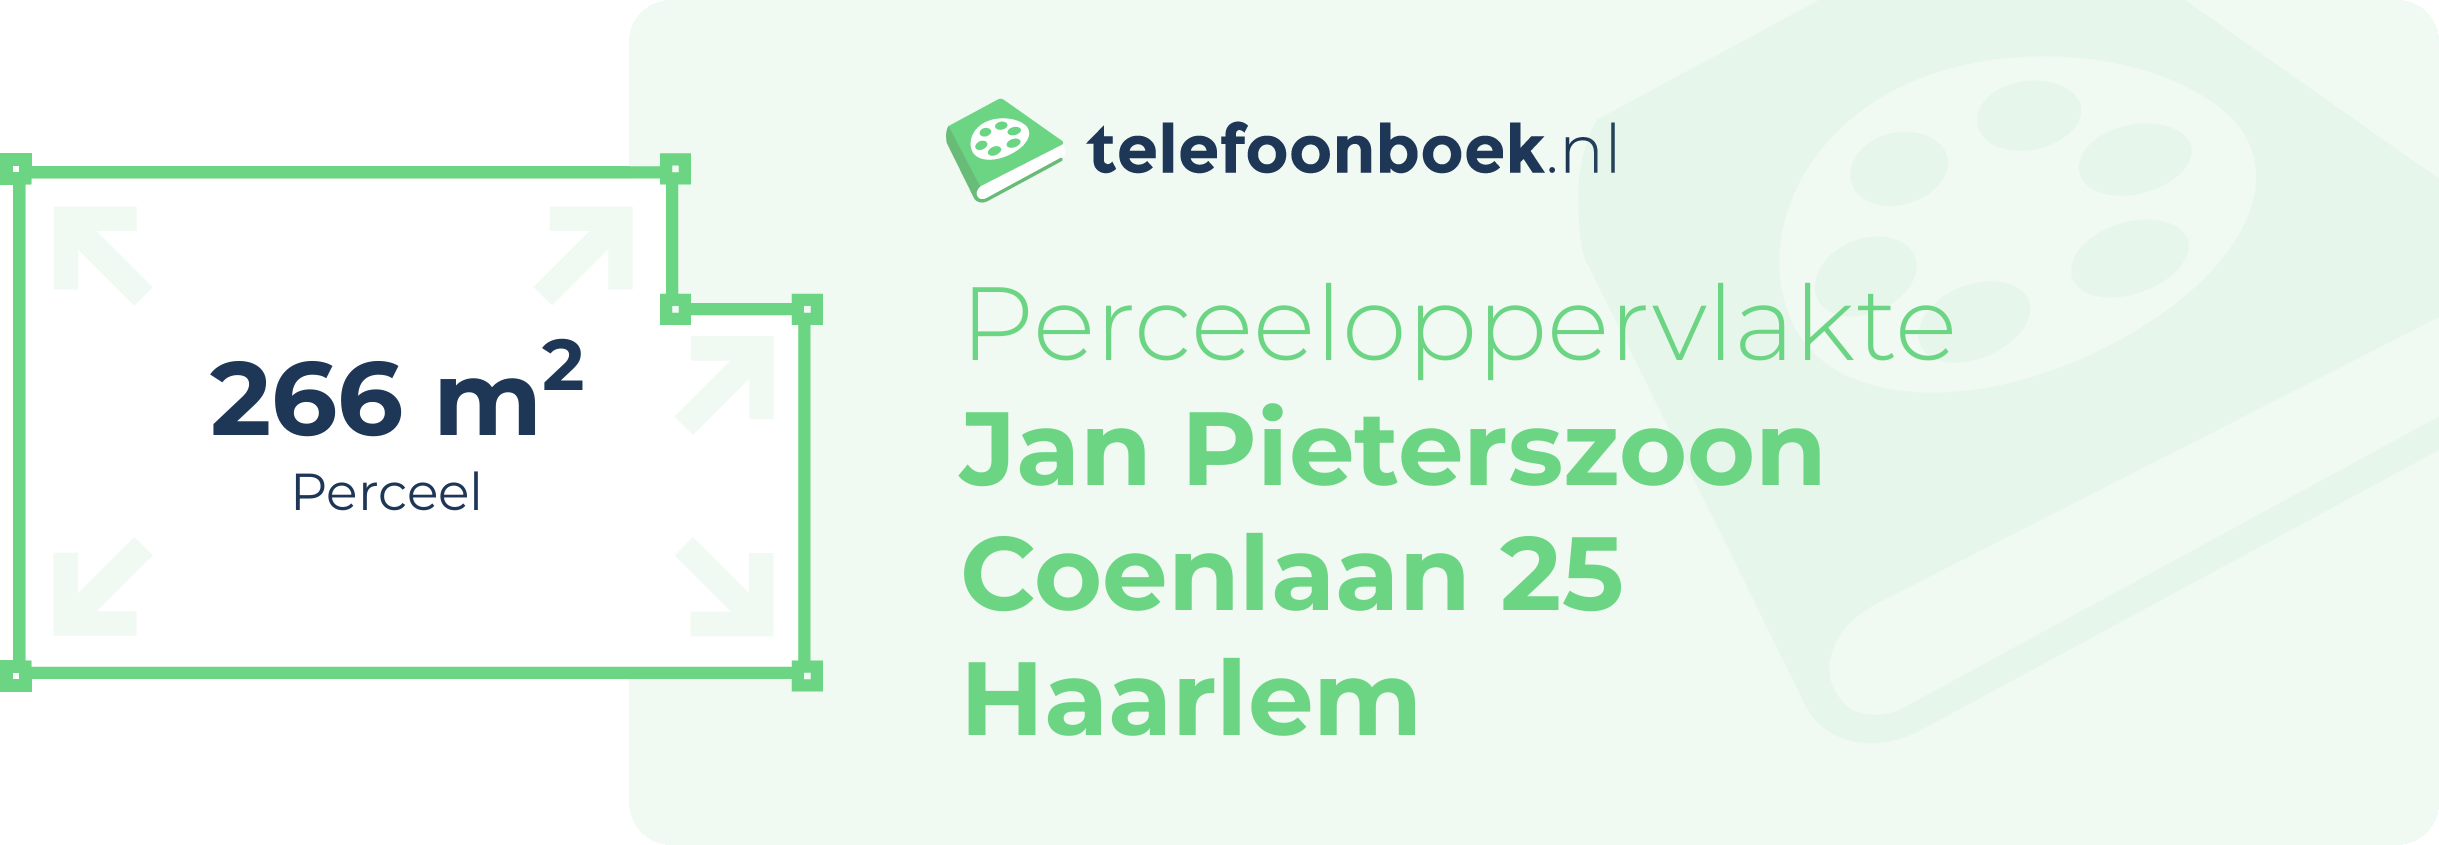 Perceeloppervlakte Jan Pieterszoon Coenlaan 25 Haarlem